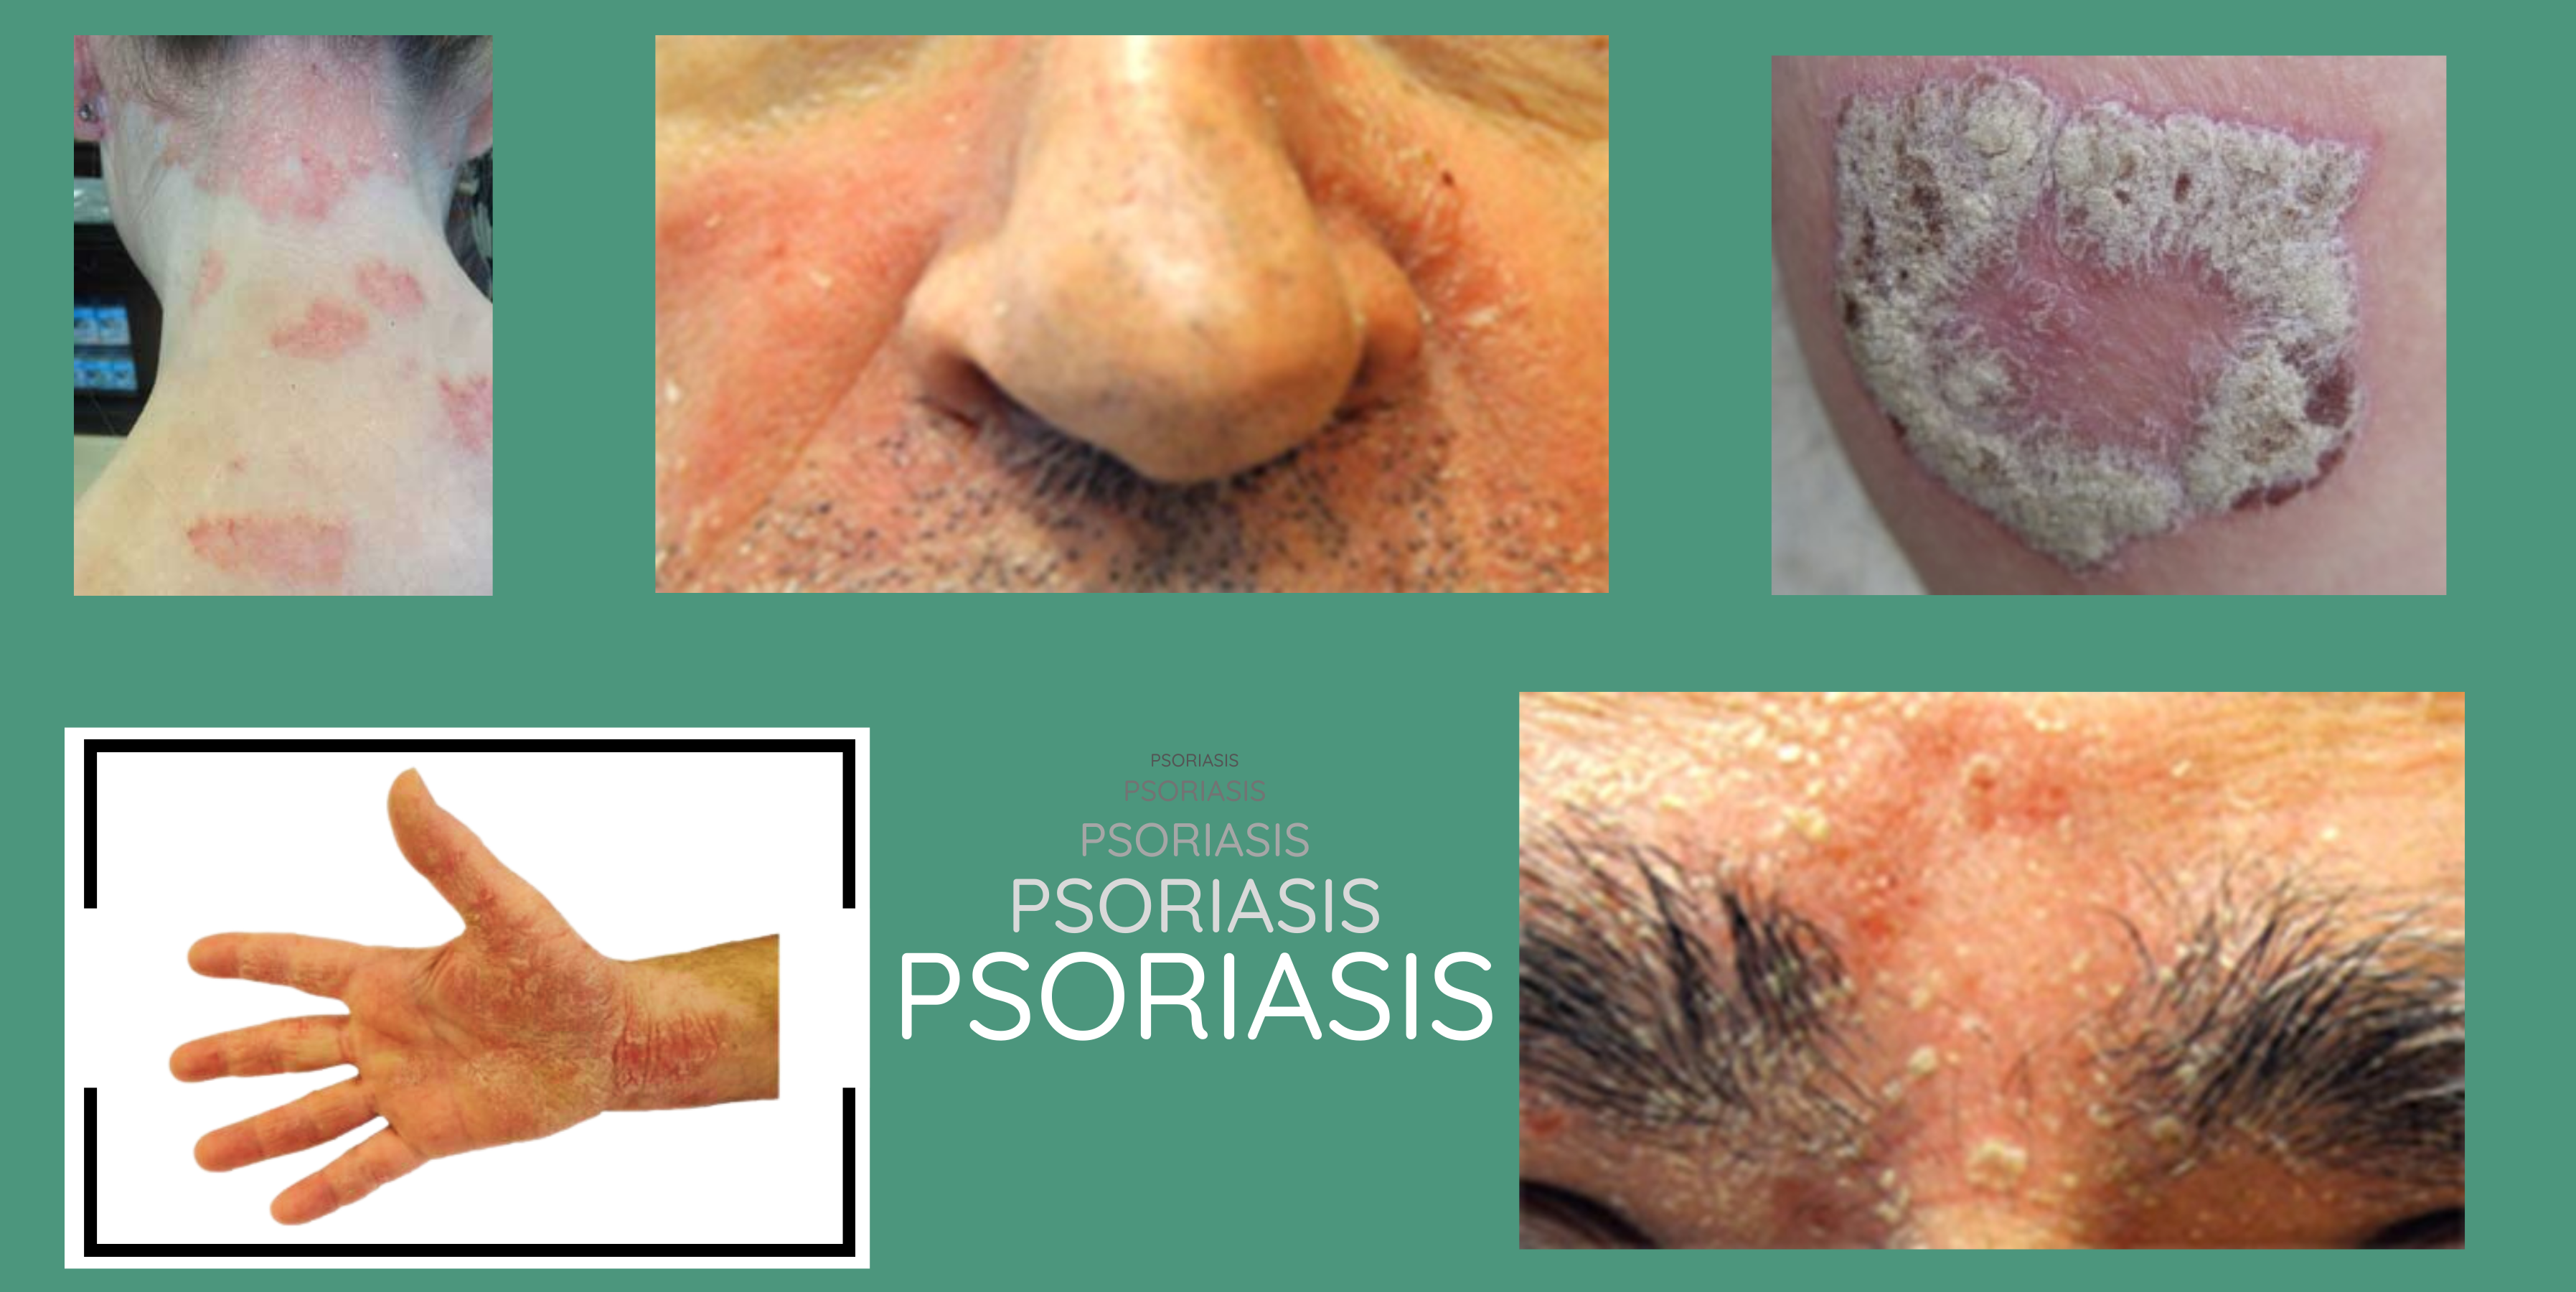 imagenes de casos de psoriasis: capilar, facial, placas, manos